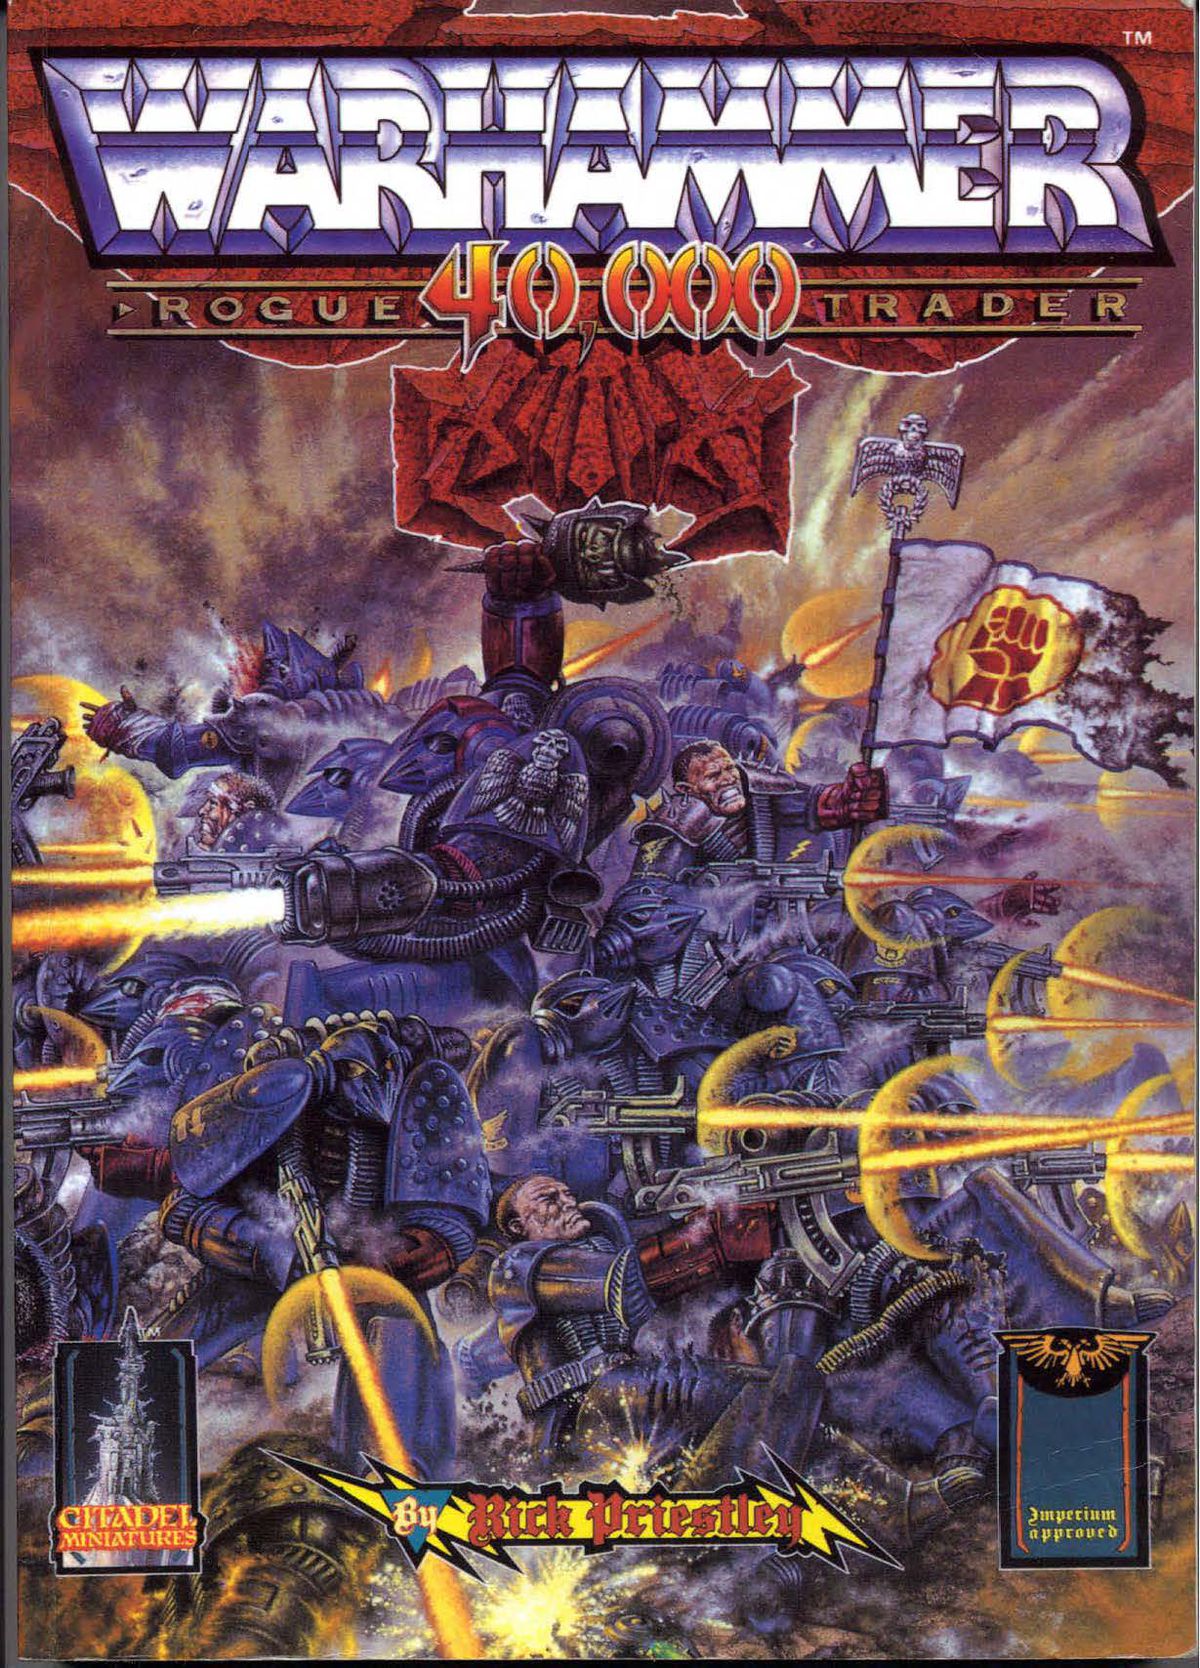 Copertina del regolamento originale di Warhammer 40,000, pubblicato nel 1987. Il suo titolo ufficiale è Rogue Trader: Warhammer 40,000.